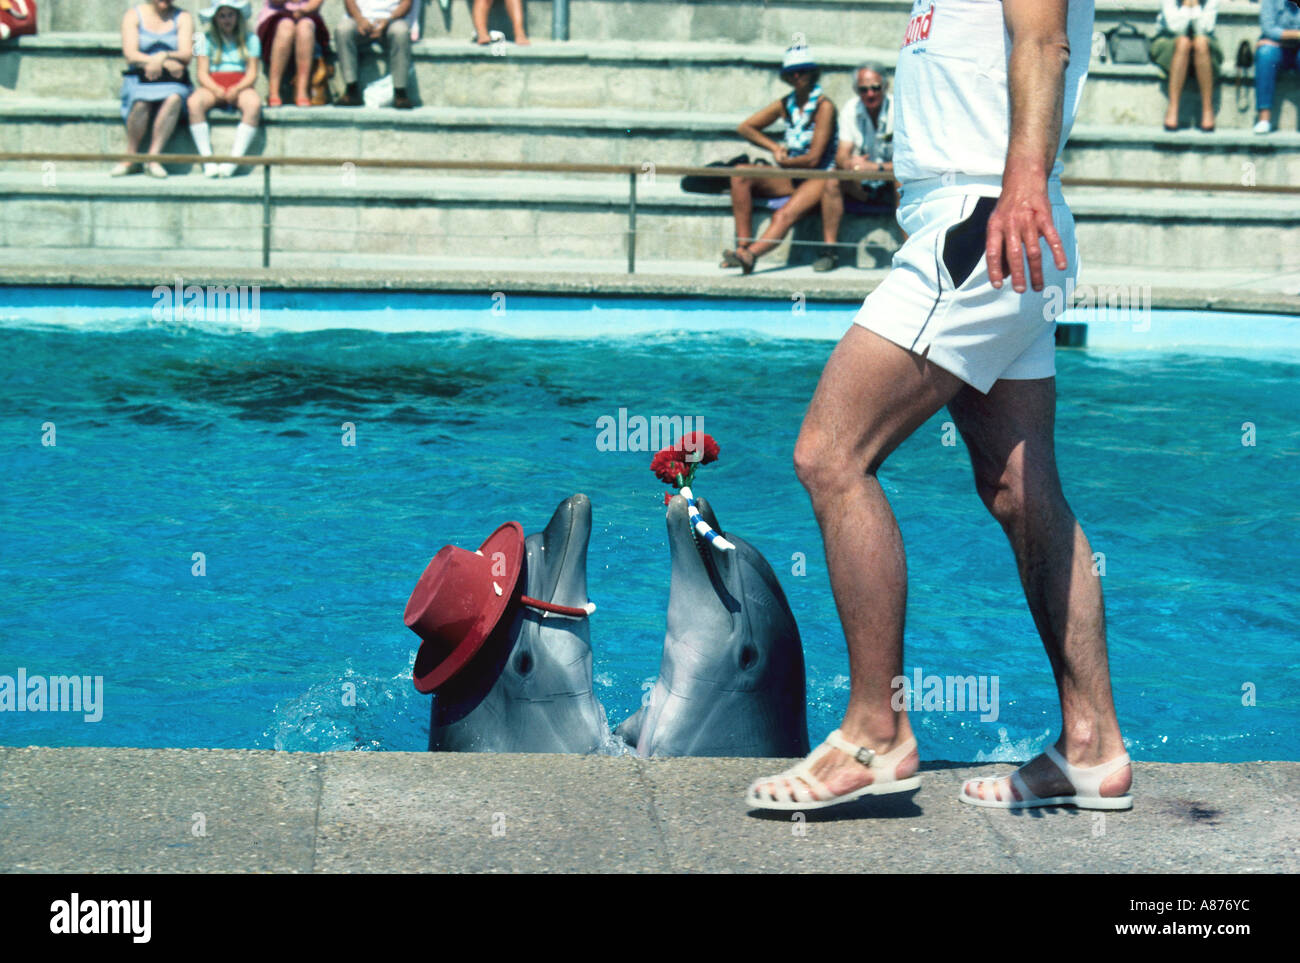 Spain Palma Dolphin show in Marineland Stock Photo